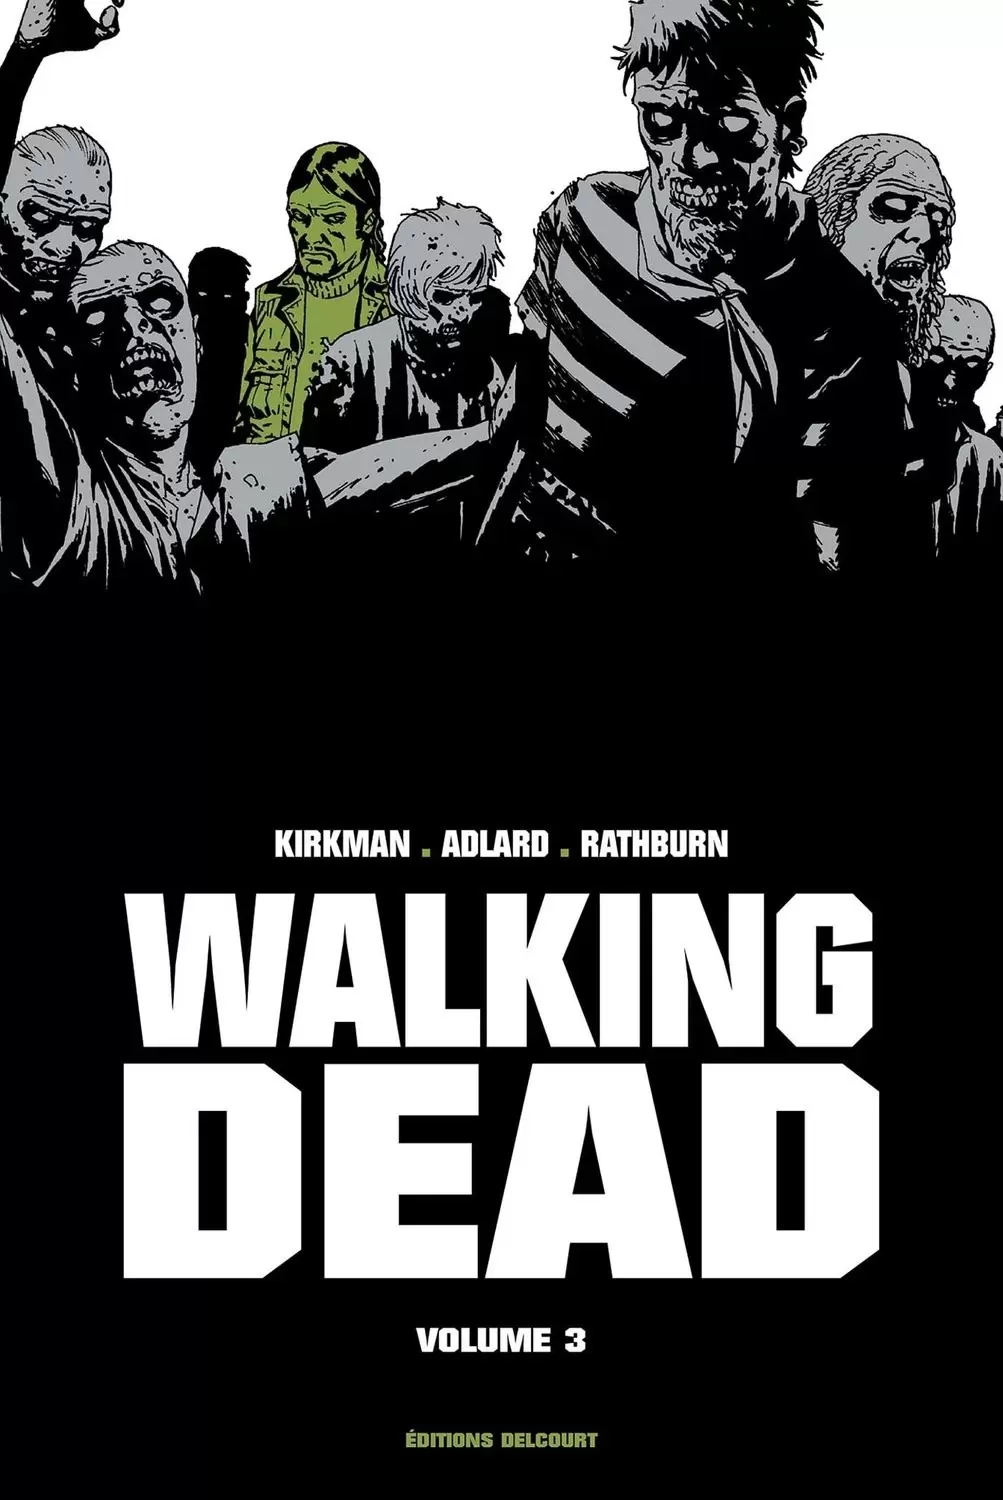 Walking Dead Prestige - Walking Dead Prestige Volume III